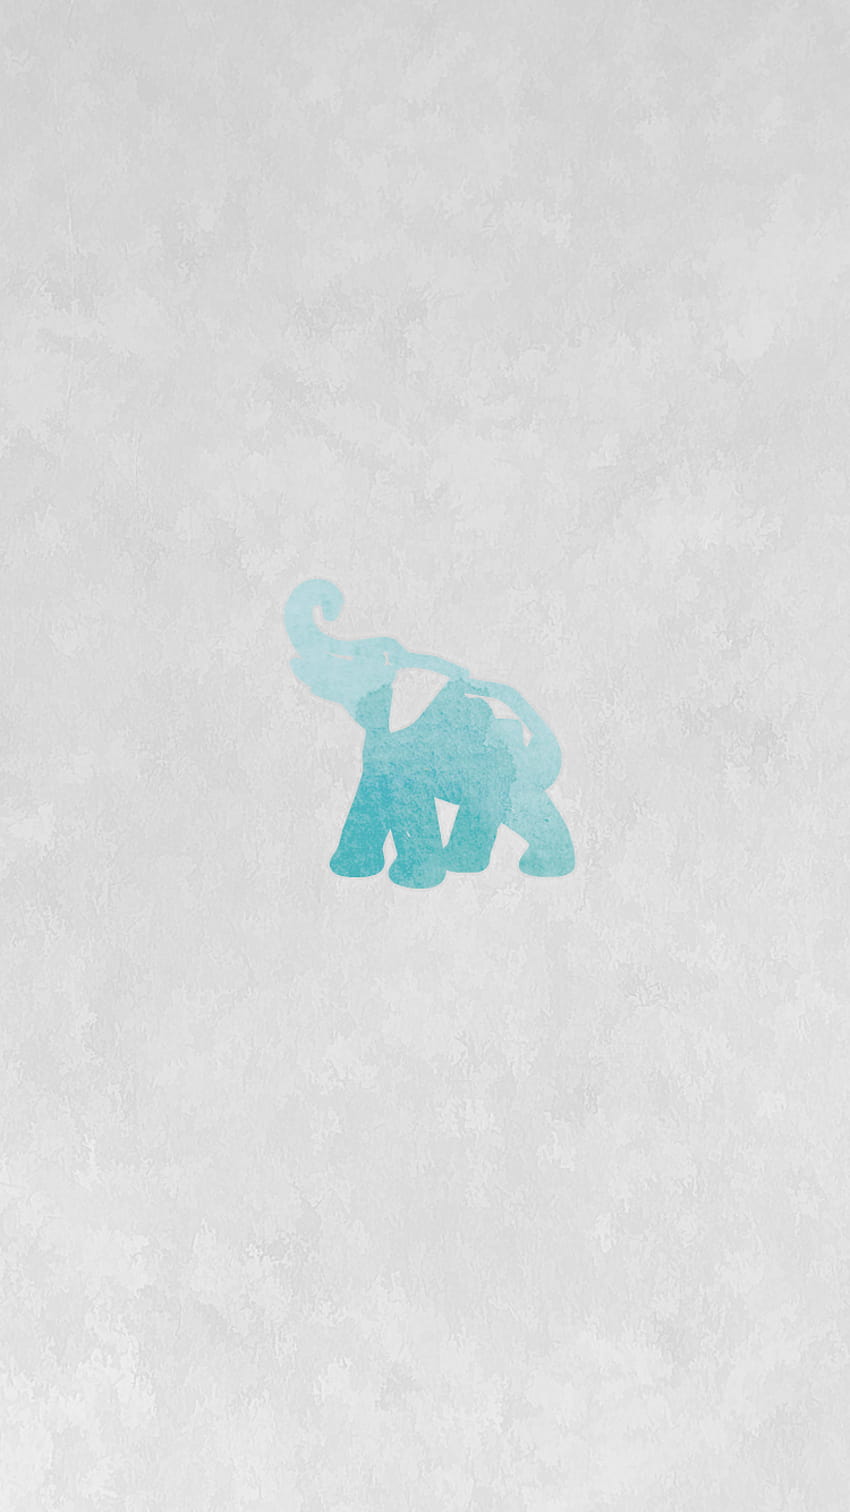 A blue elephant on the ground - Elephant